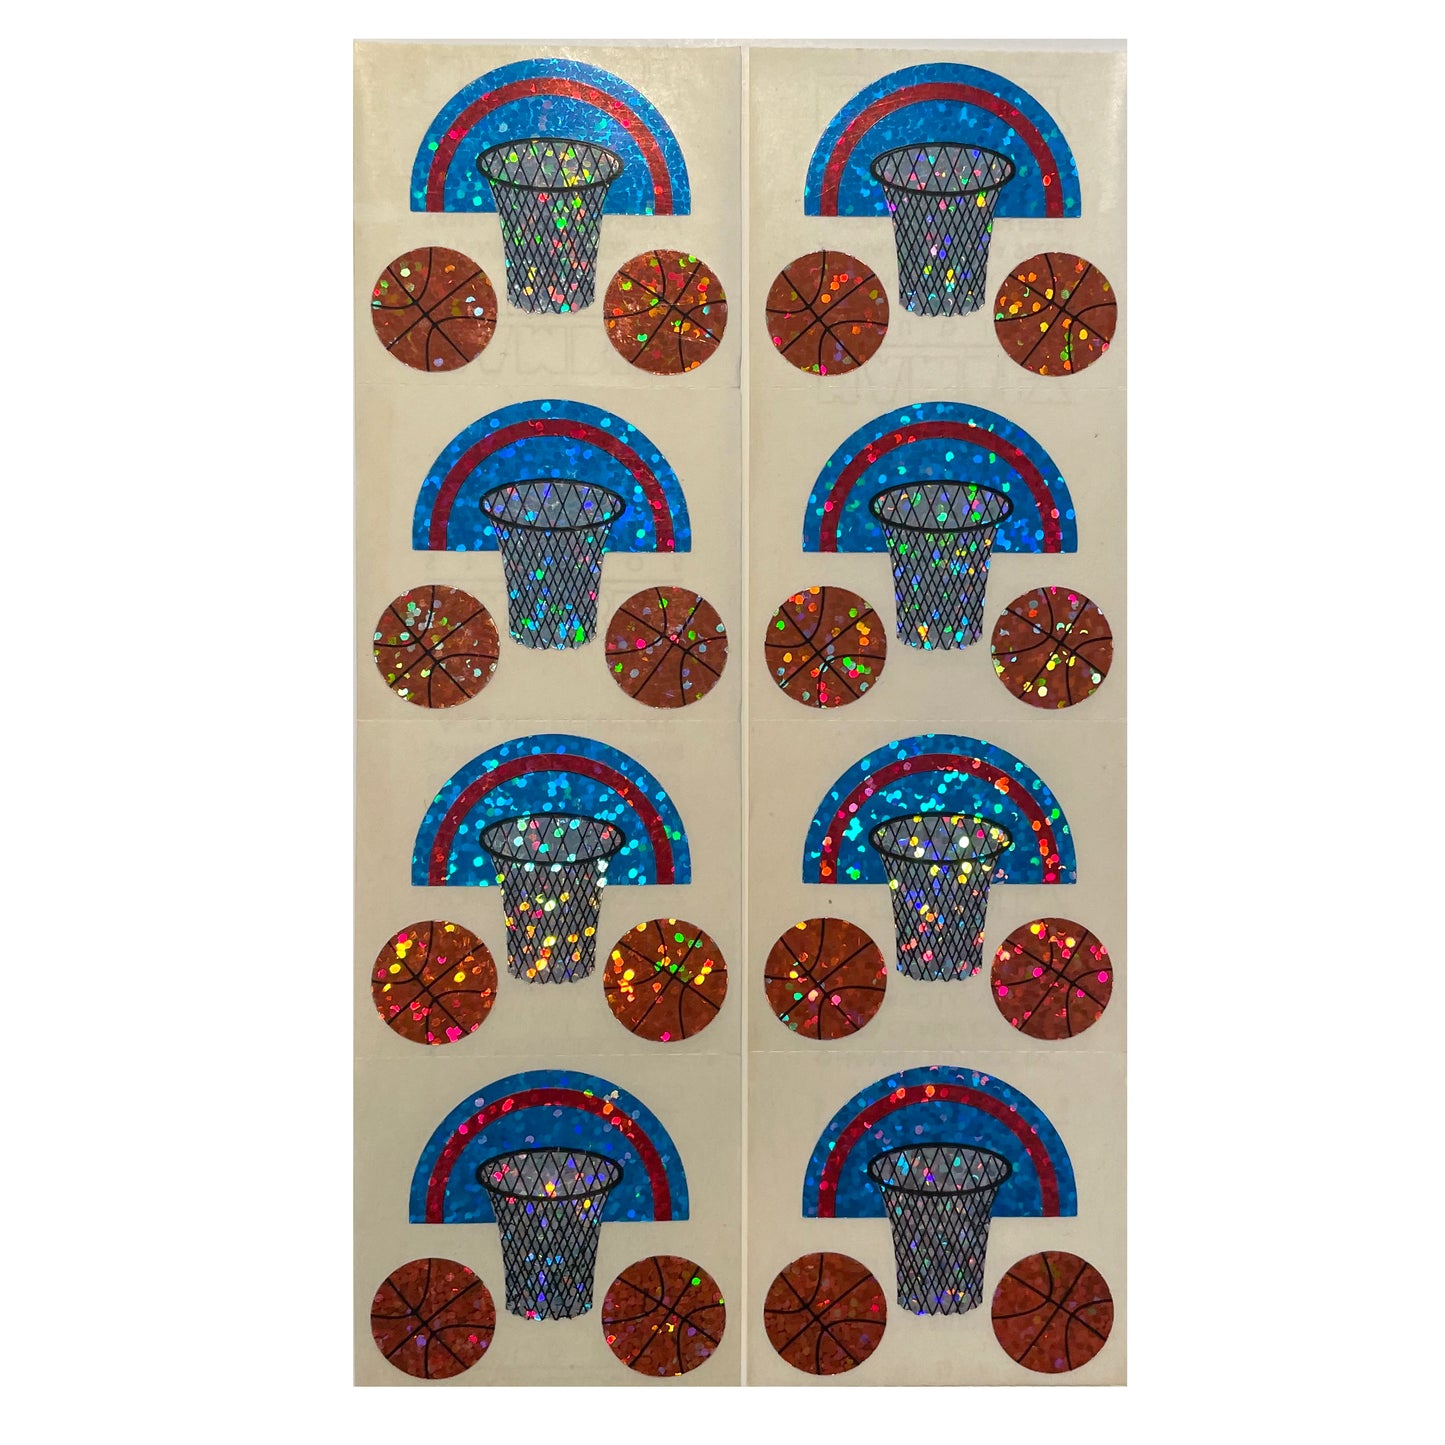 HAMBLY: Basketball glitter stickers